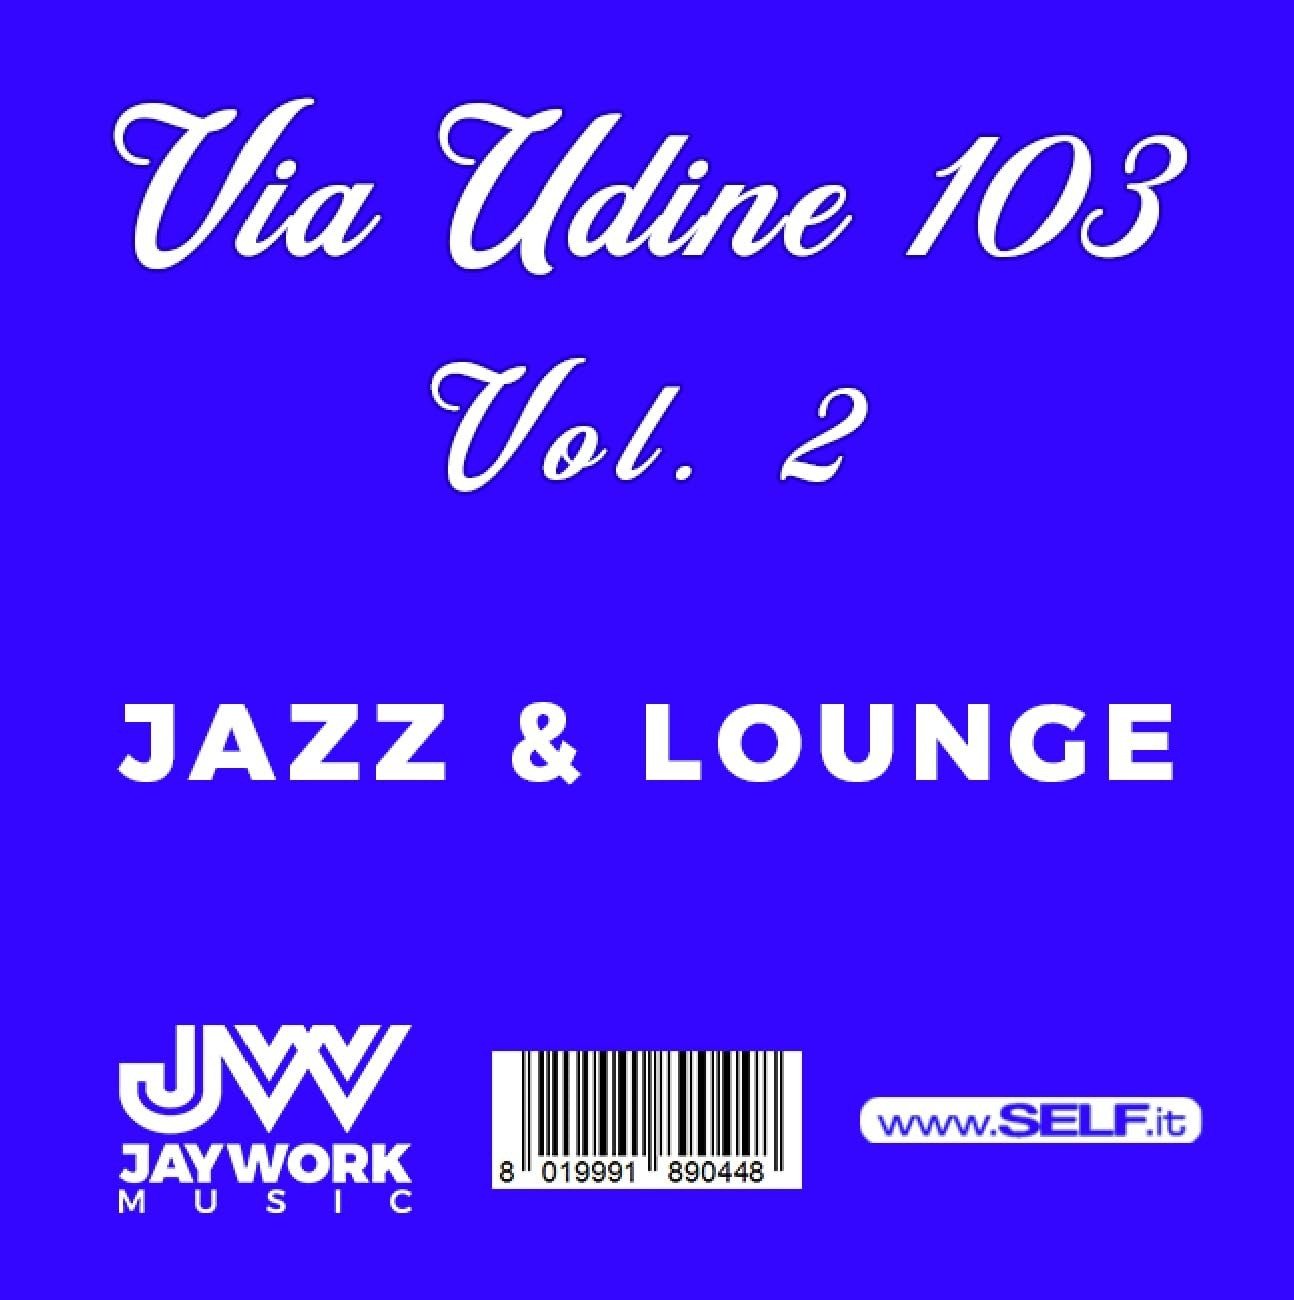 CD Shop - V/A VIA UDINE 103 VOL.2